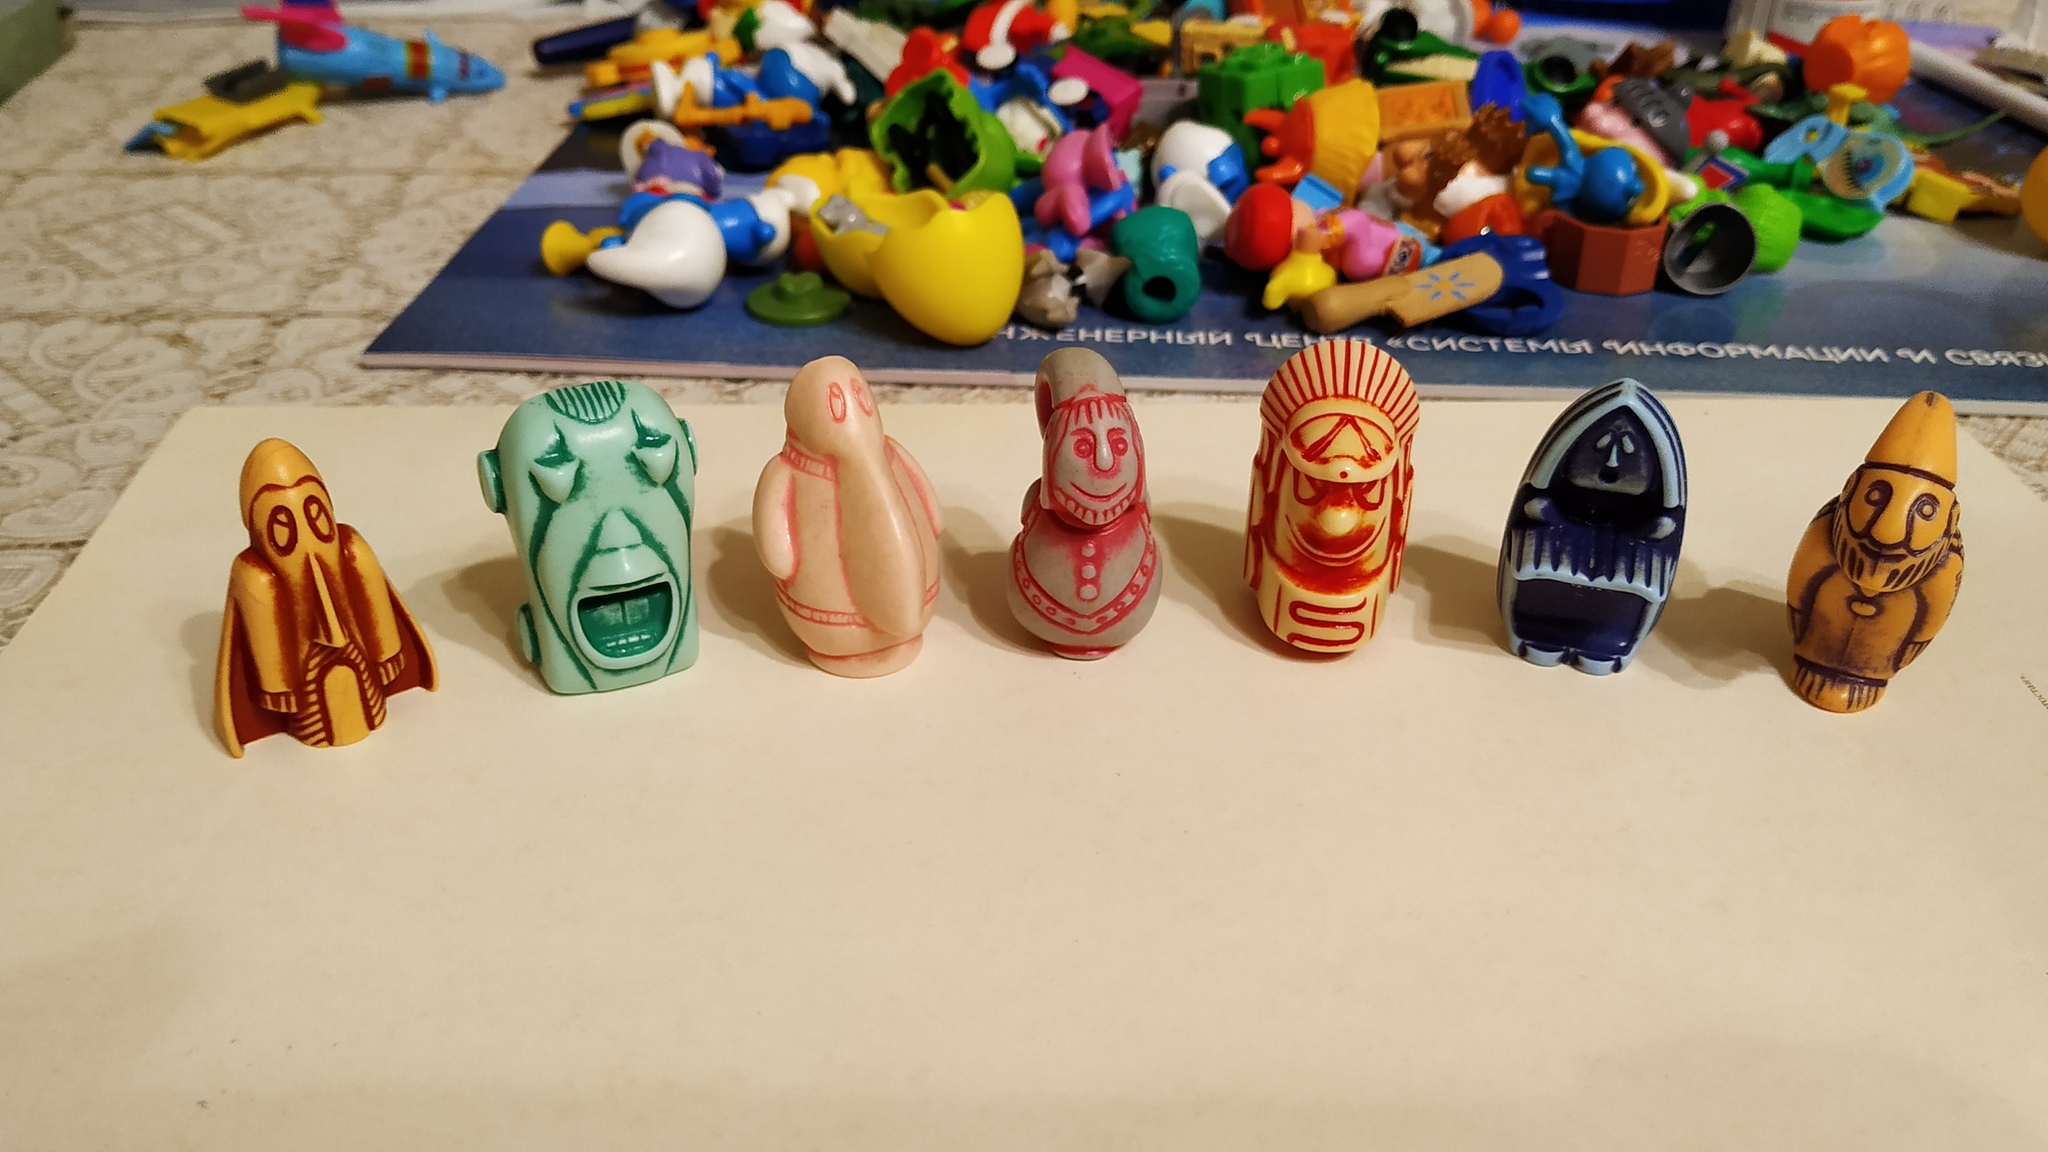 Поделки из яиц киндер сюрпризов своими руками: фото идеи детских изделий